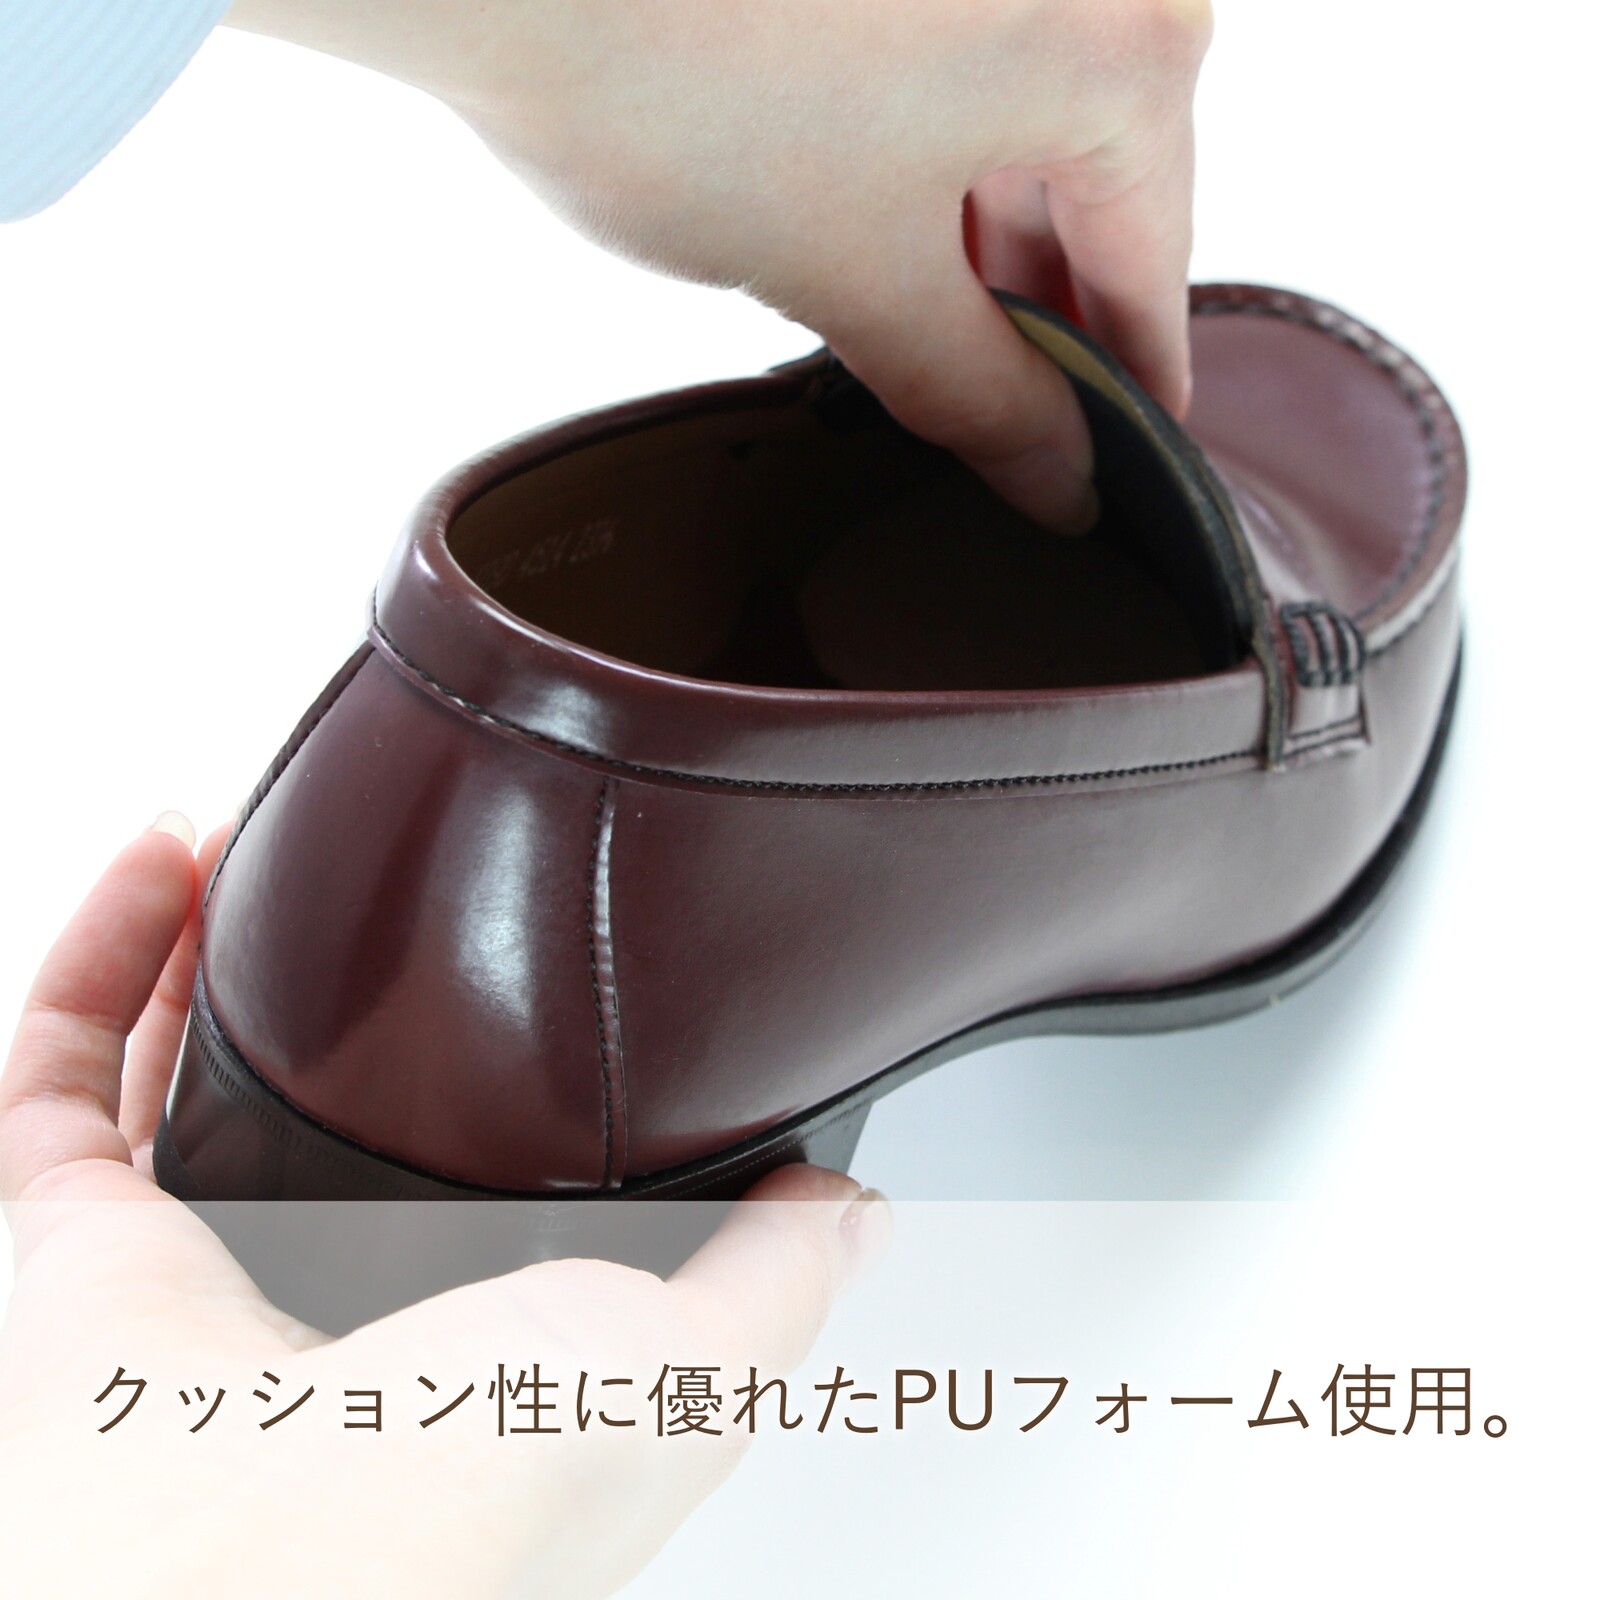 靴サイズ調整甲用パットワイドタイプクッション効果タンパッド男女兼用日本製